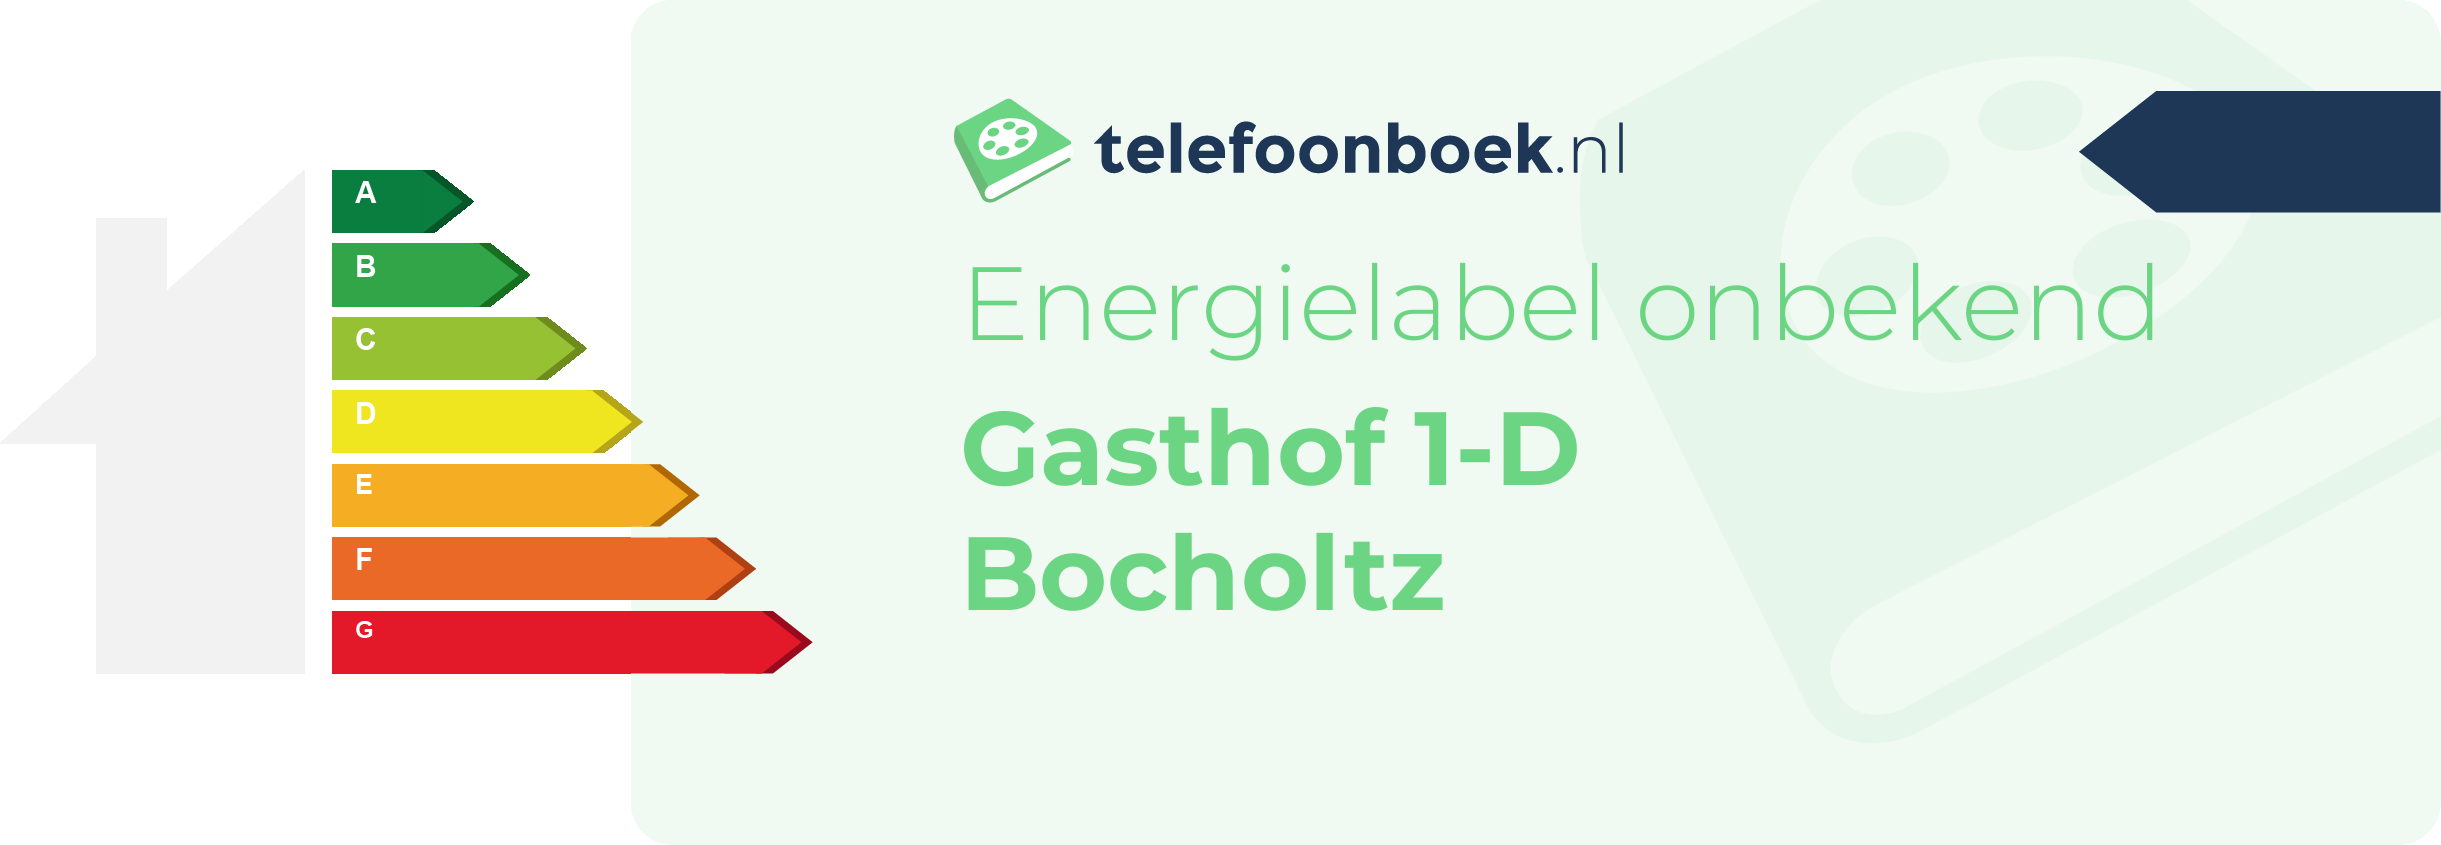 Energielabel Gasthof 1-D Bocholtz